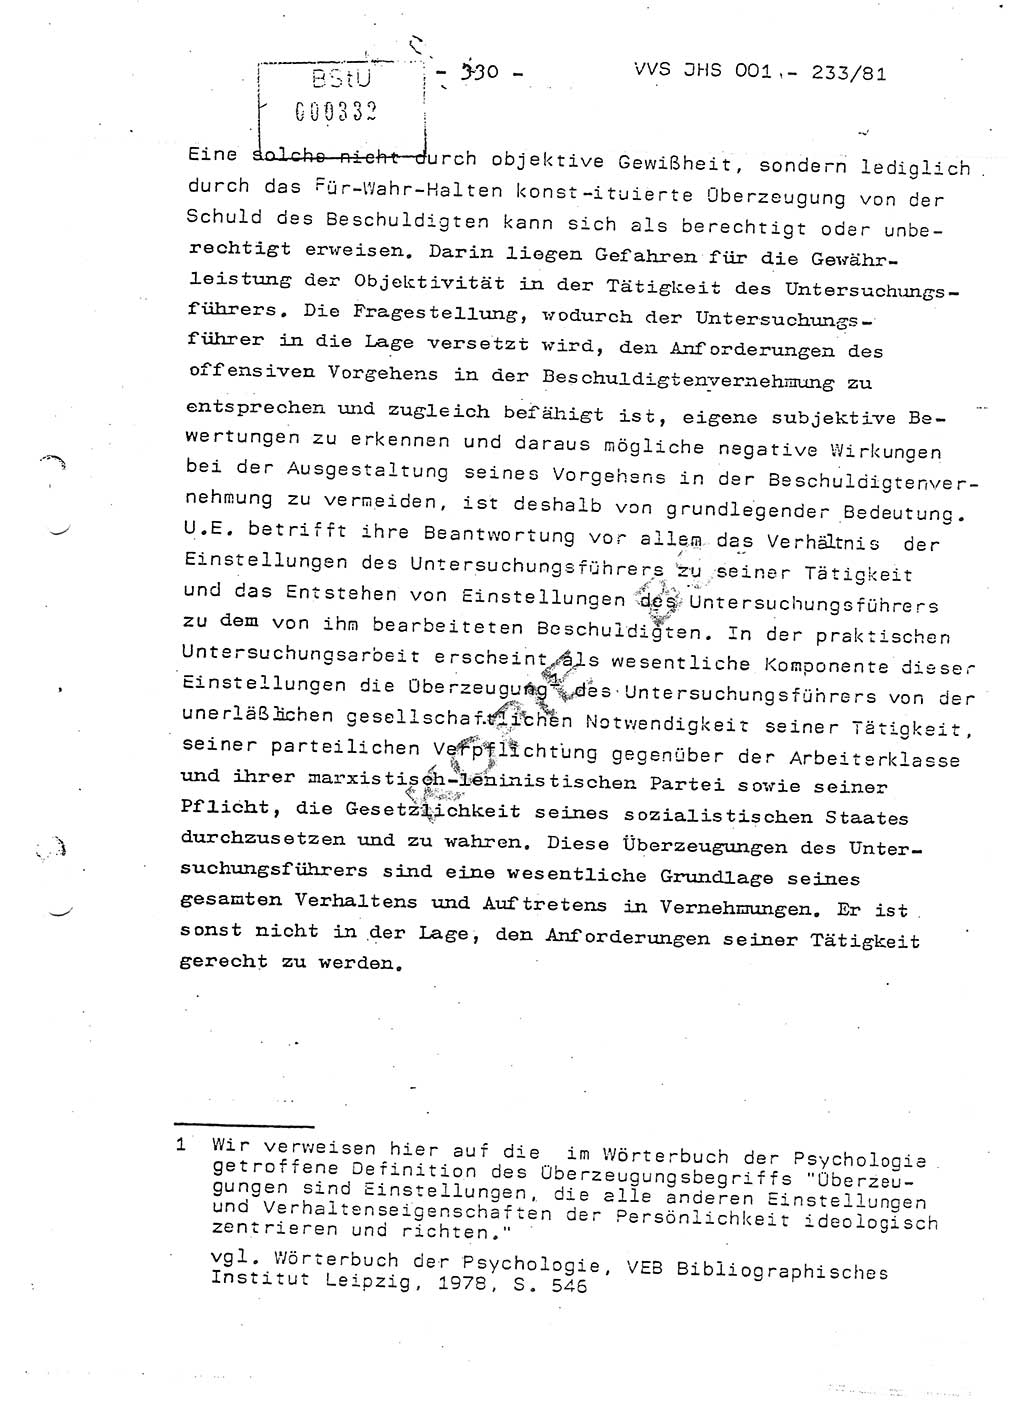 Dissertation Oberstleutnant Horst Zank (JHS), Oberstleutnant Dr. Karl-Heinz Knoblauch (JHS), Oberstleutnant Gustav-Adolf Kowalewski (HA Ⅸ), Oberstleutnant Wolfgang Plötner (HA Ⅸ), Ministerium für Staatssicherheit (MfS) [Deutsche Demokratische Republik (DDR)], Juristische Hochschule (JHS), Vertrauliche Verschlußsache (VVS) o001-233/81, Potsdam 1981, Blatt 330 (Diss. MfS DDR JHS VVS o001-233/81 1981, Bl. 330)